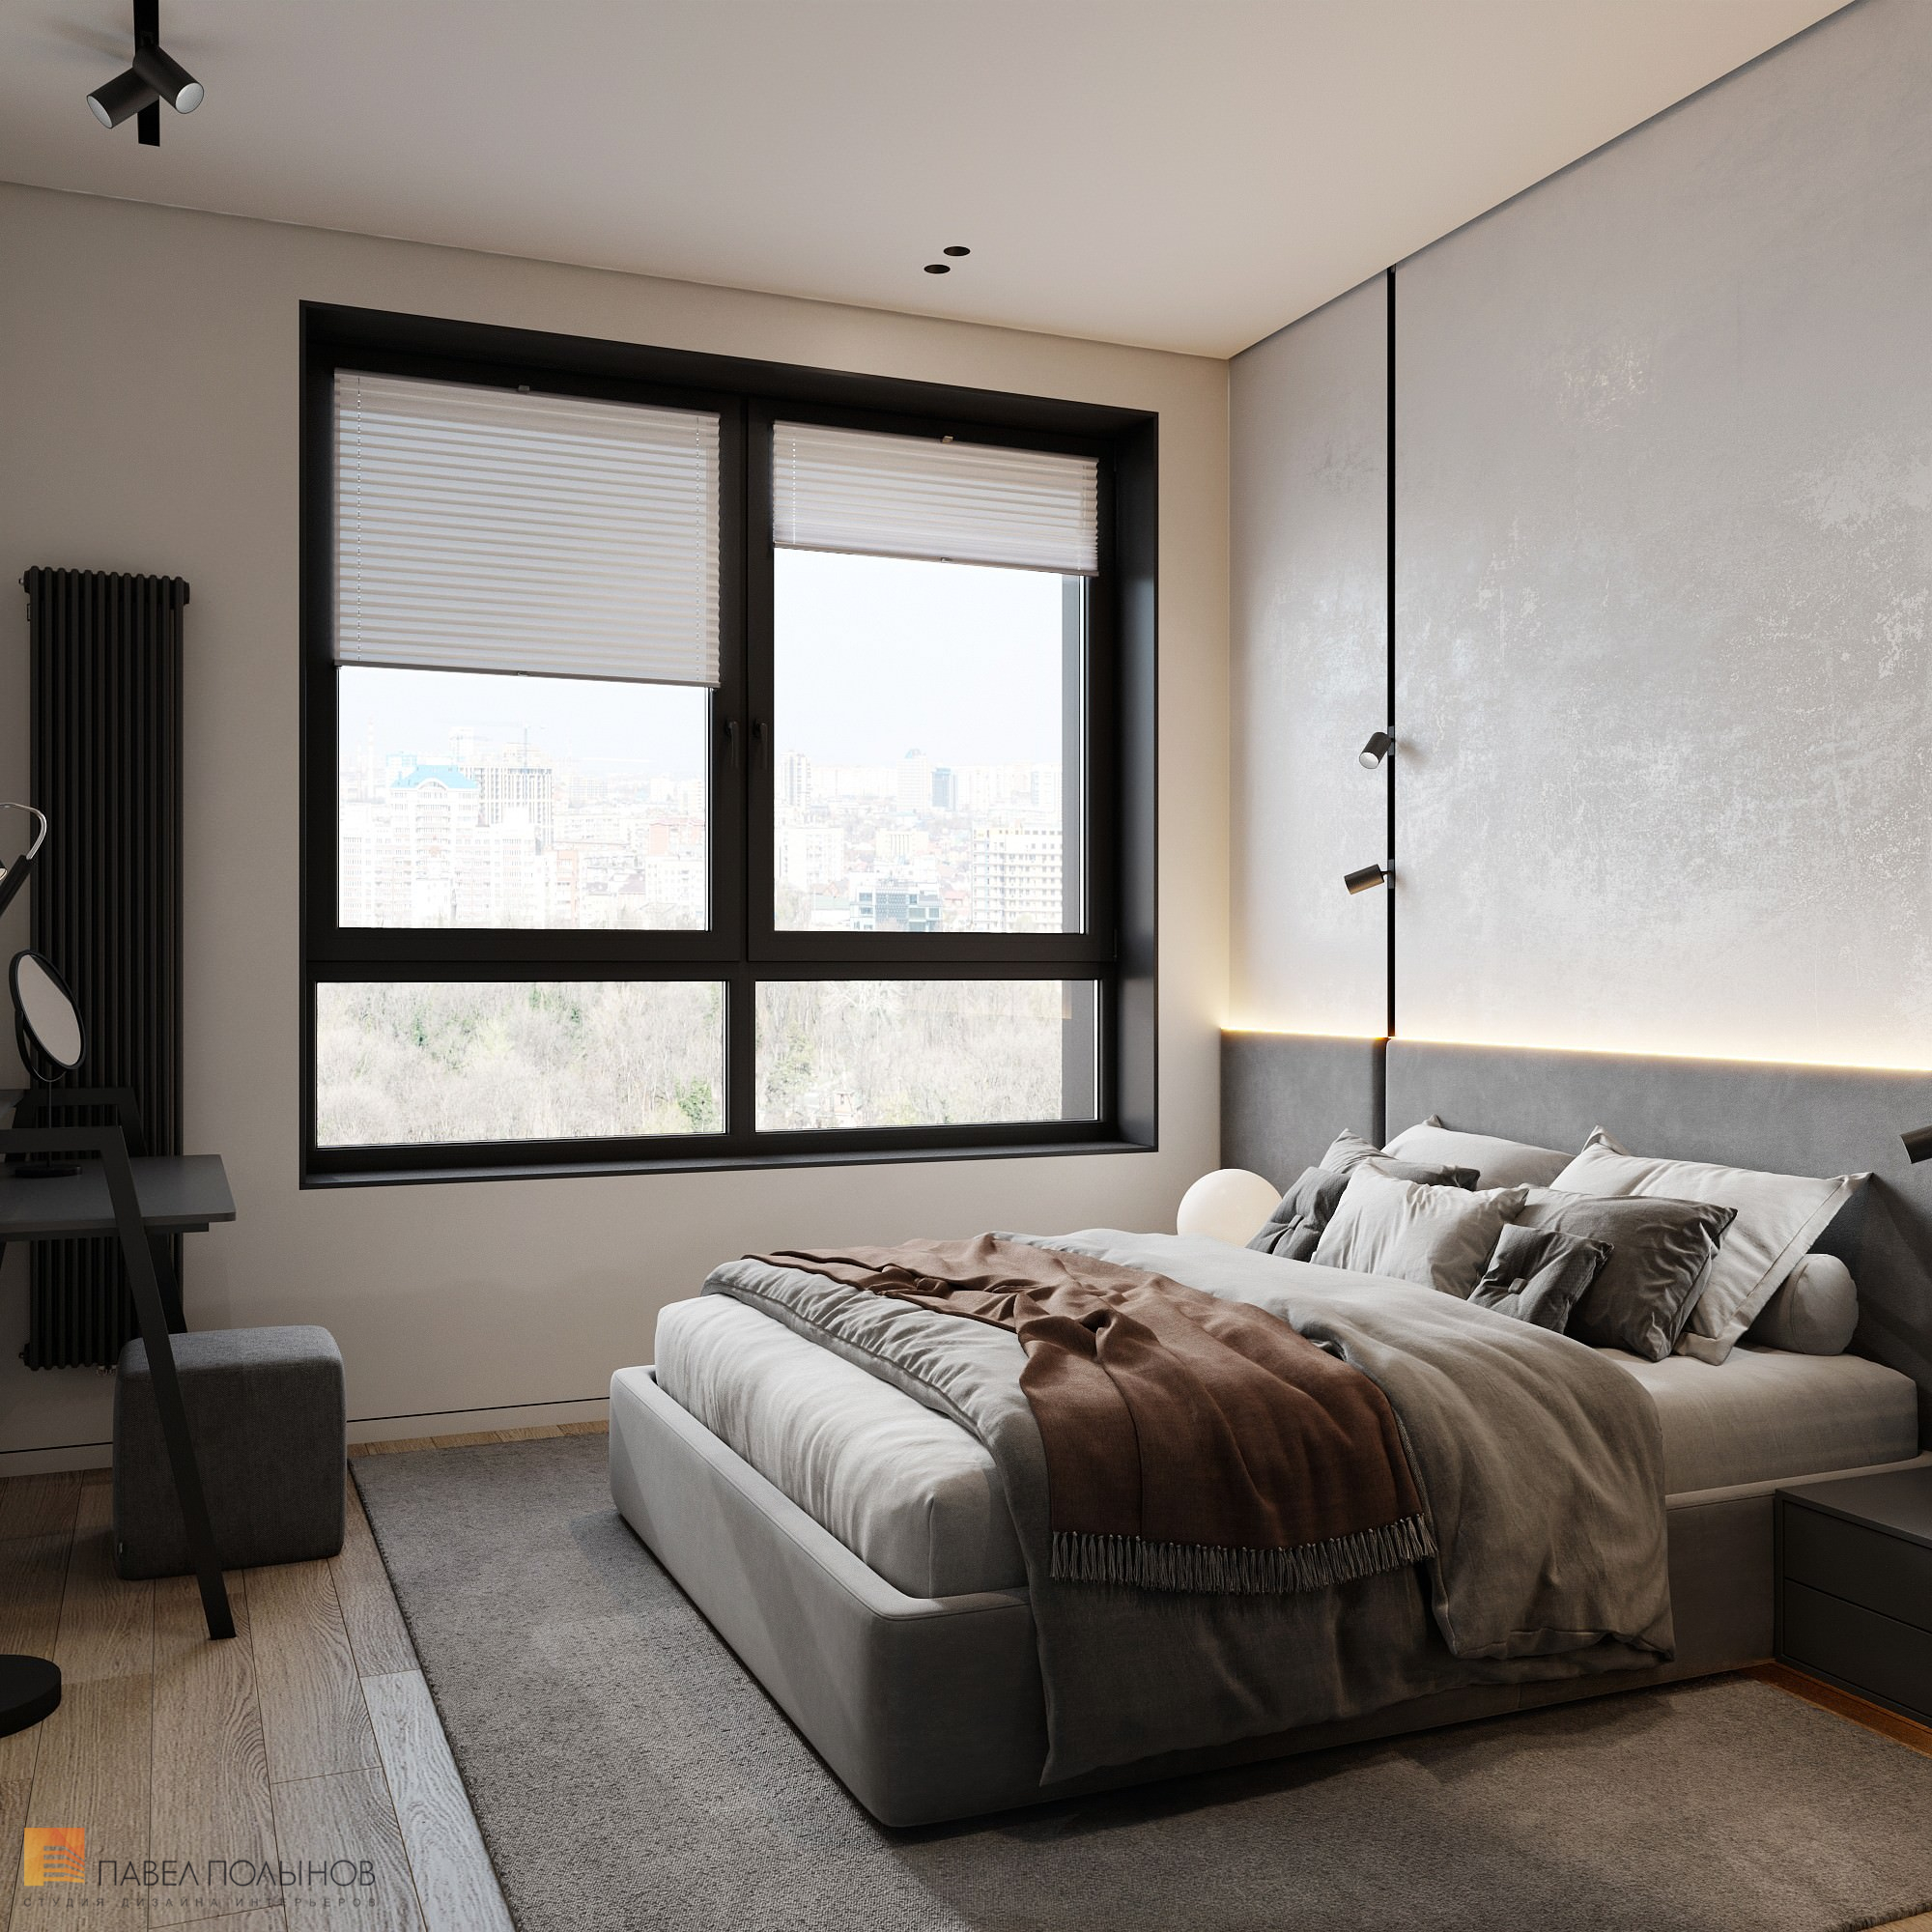 Фото дизайн интерьера спальни из проекта «Дизайн интерьера квартиры в современном стиле, ЖК «Сердце столицы», 98 кв.м.»